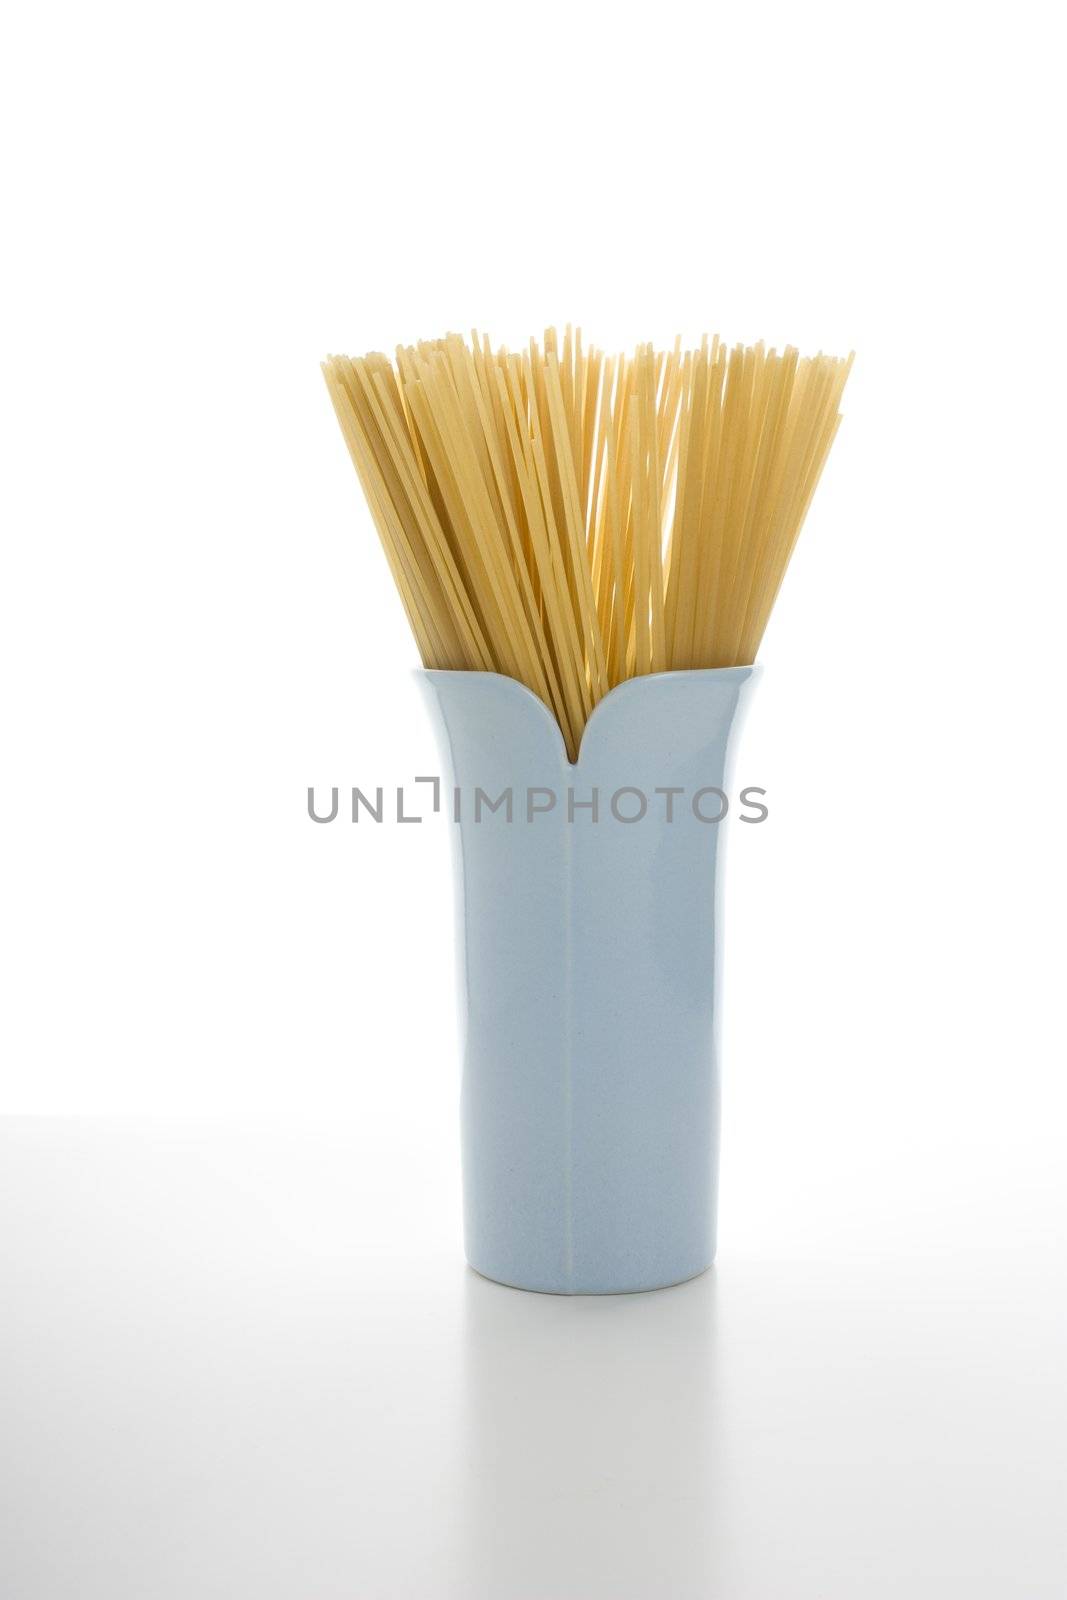 Spaghetti in Blue Vase by charlotteLake